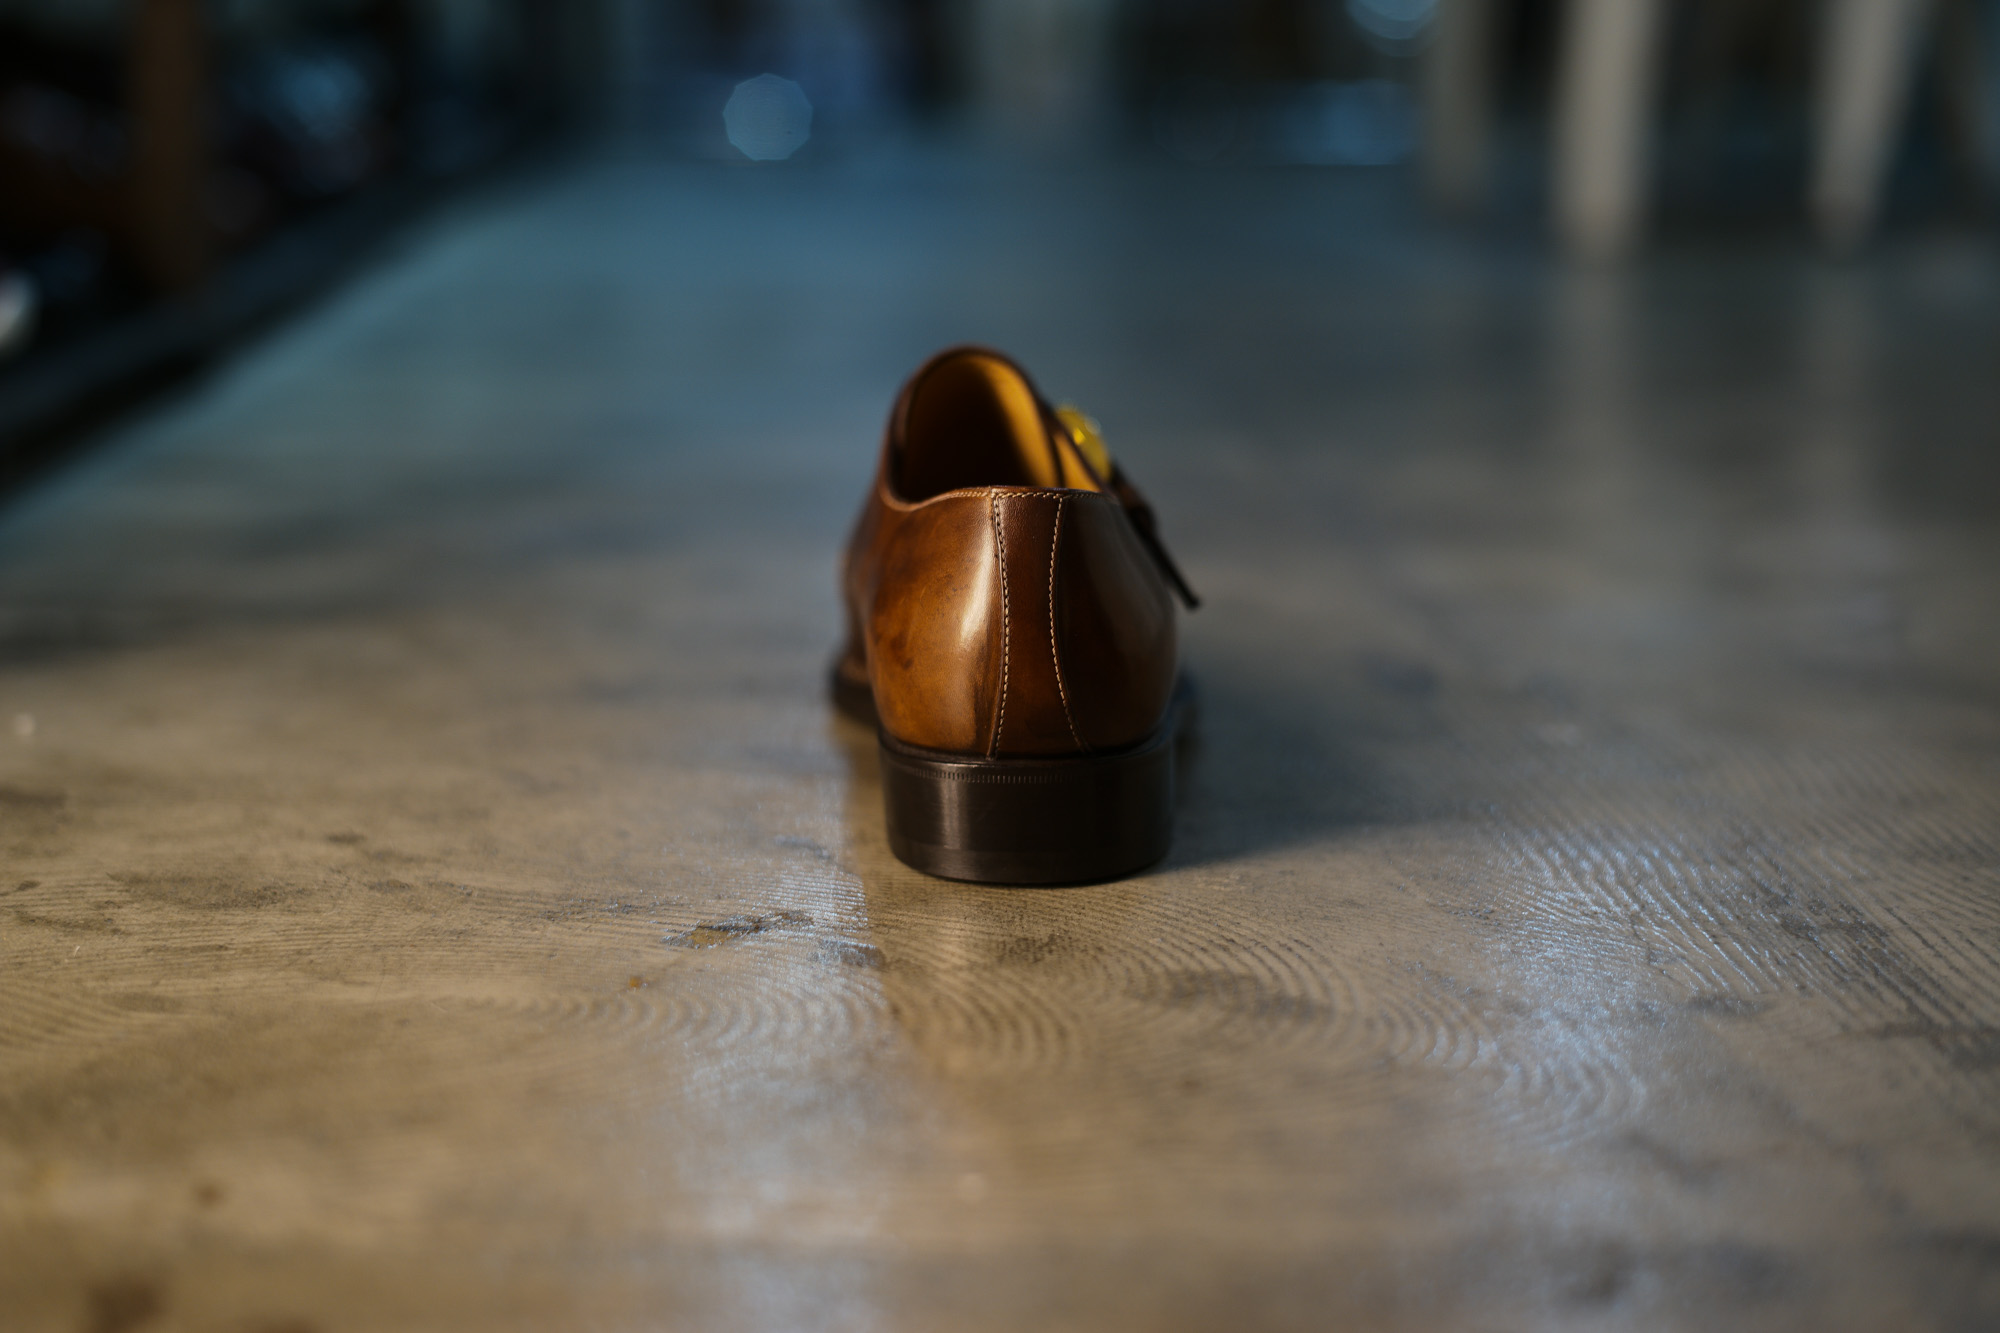 ENZO BONAFE (エンツォボナフェ) 【ART.3721】Single Monk Strap Shoes シングルモンクストラップシューズ CORDOVAN コードバン ノルベジェーゼ製法 ドレスシューズ No.4(#4) made in italy (イタリア製) 愛知 名古屋 Alto e Diritto アルト エ デリット enzobonafe コードバン no4 ナンバーフォー